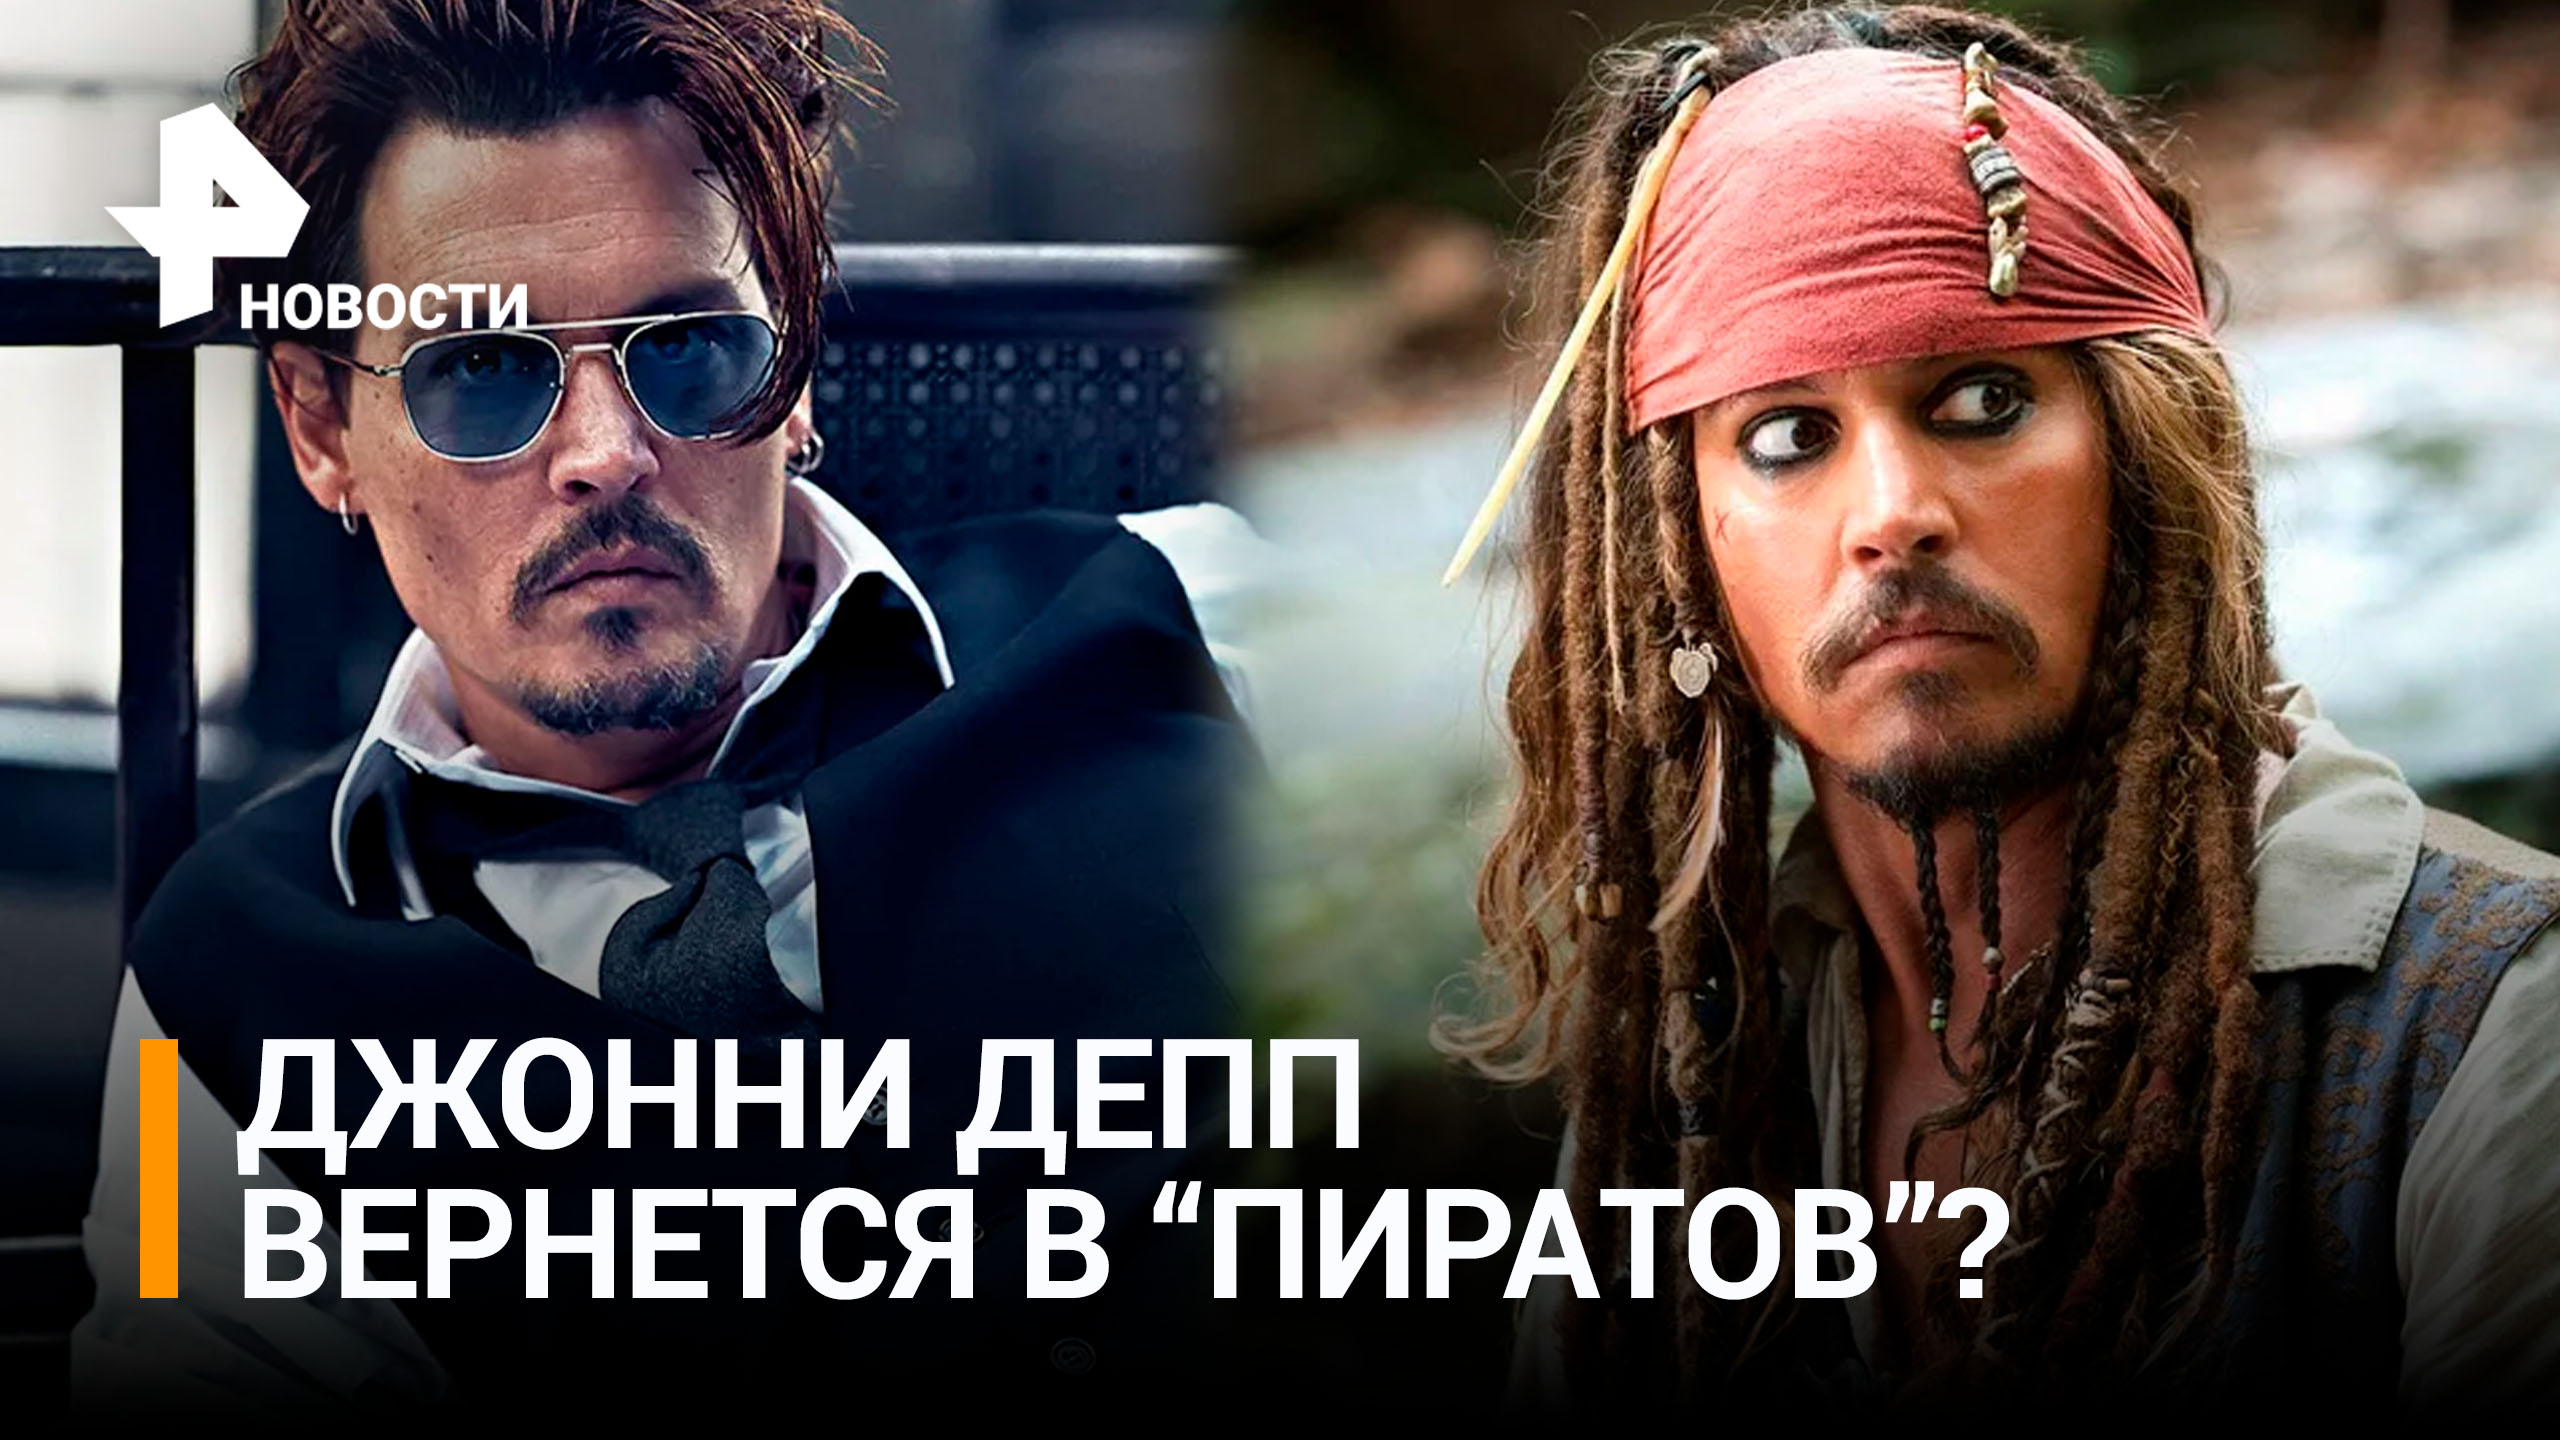 Джонни Депп снимется в новых "Пиратах Карибского моря" / РЕН Новости